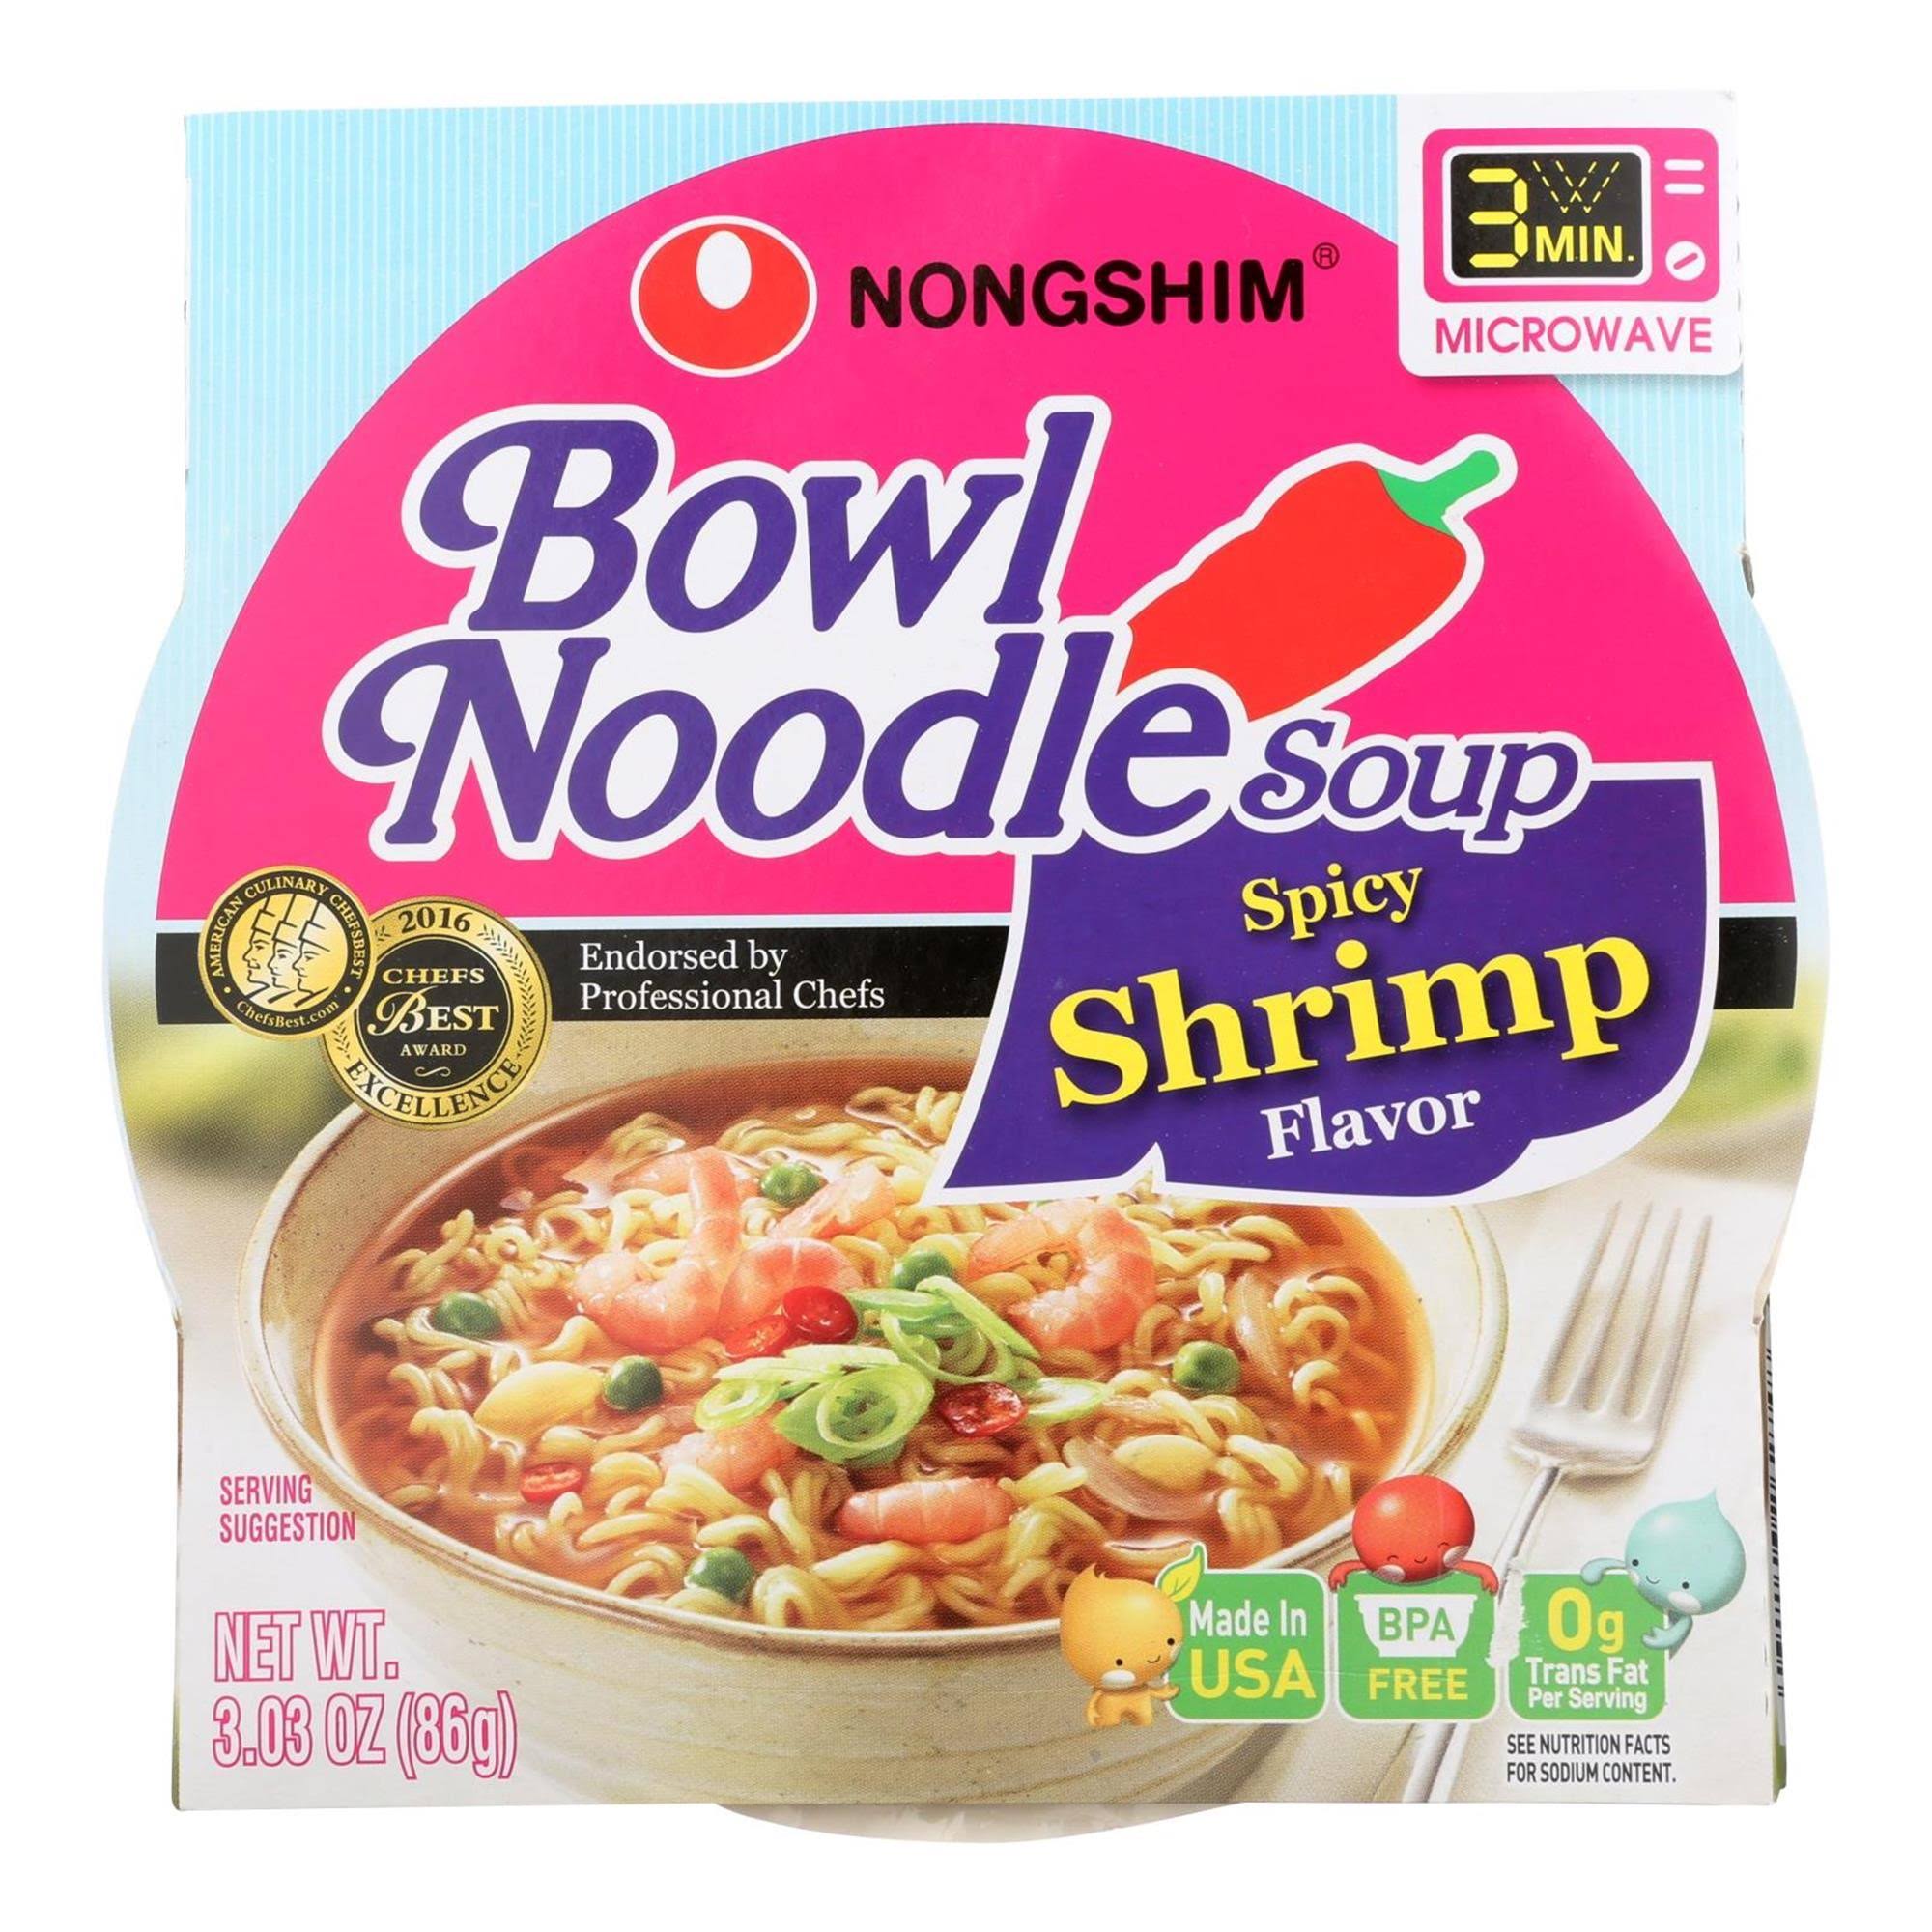 Nongshim Noodle Soup - 3.03oz, Spicy Shrimp